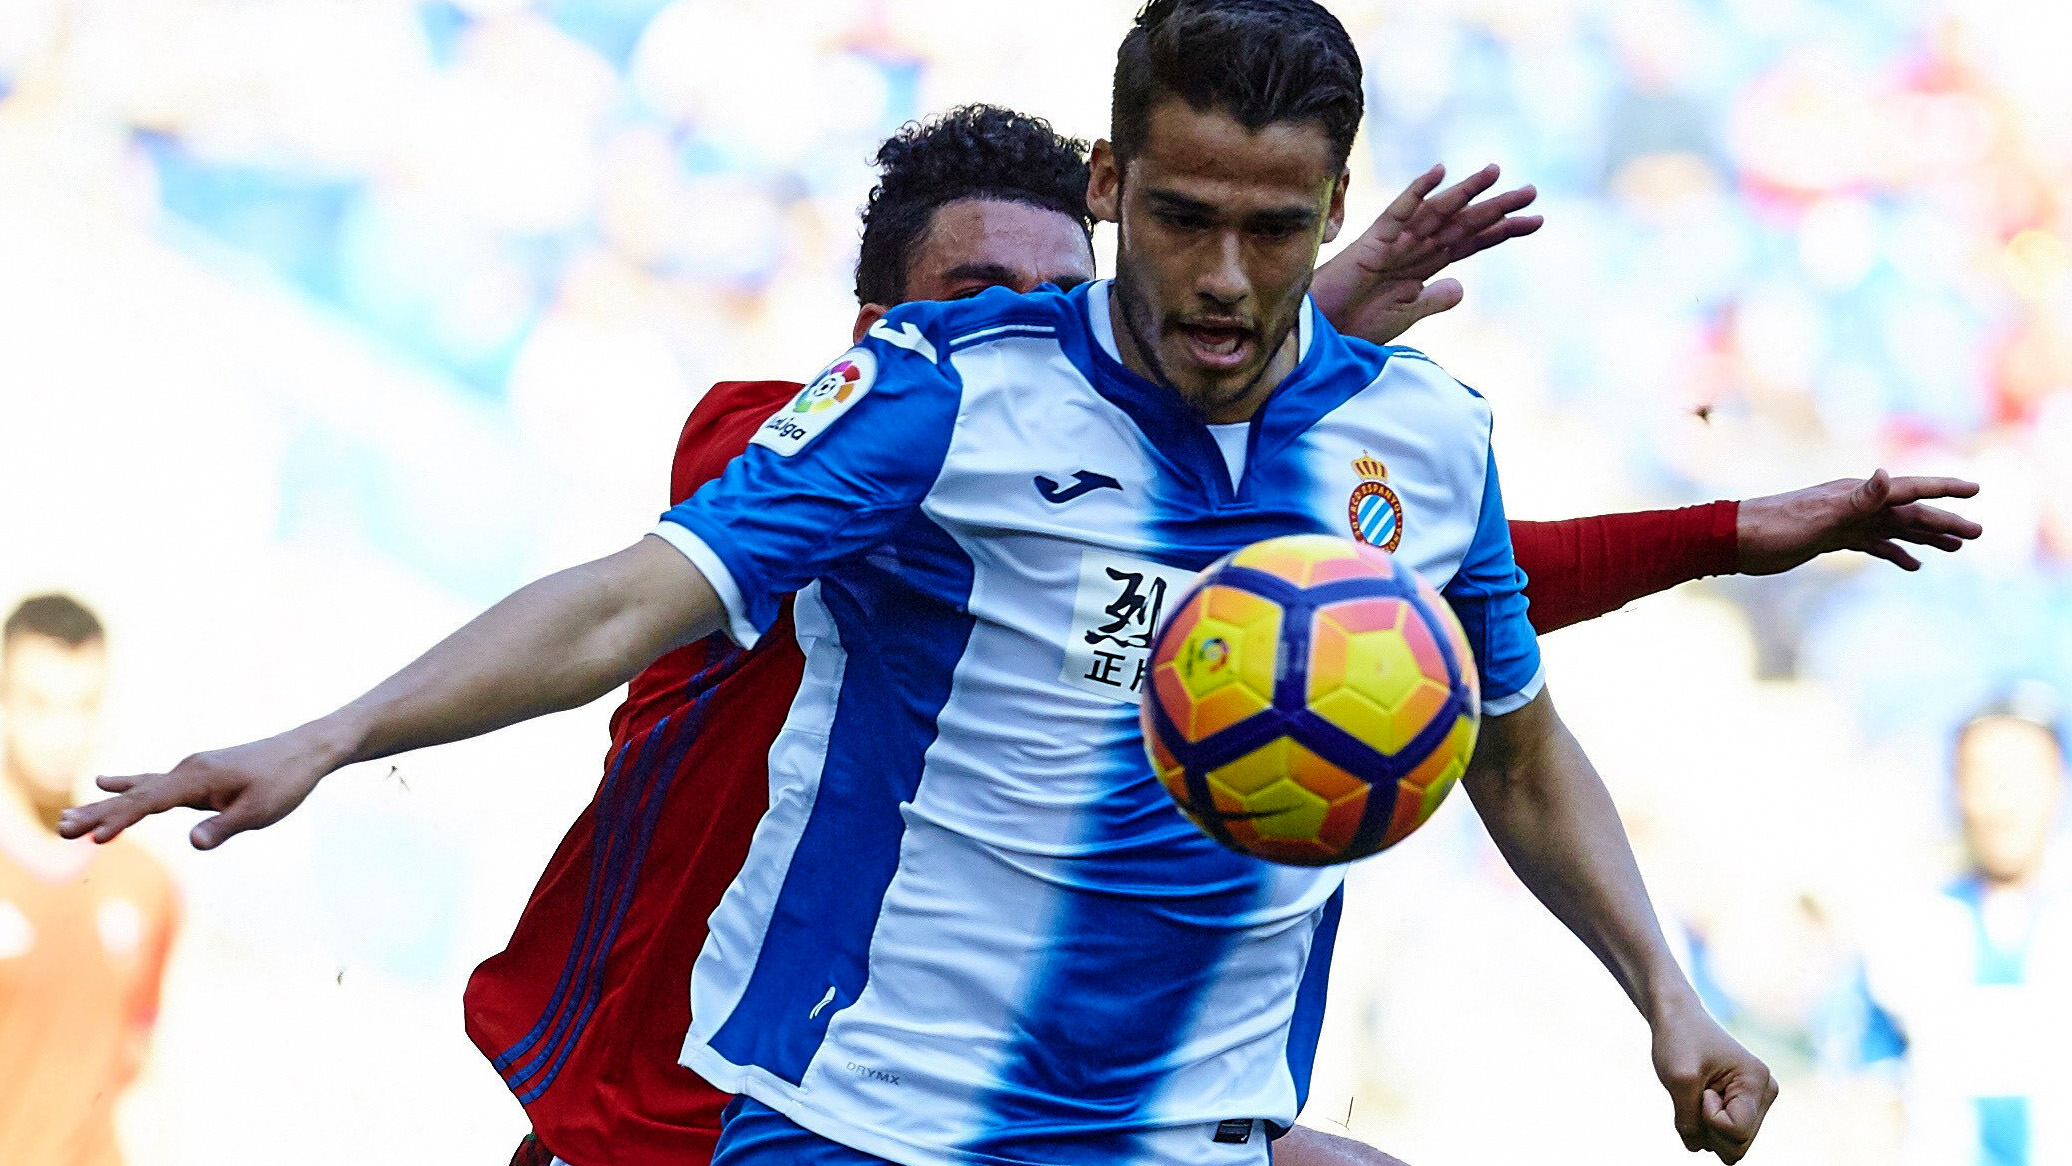 Tan rápido como un flash Monet Independiente Mexicans in Europe: Diego Reyes continues rise with Espanyol in La Liga -  ESPN